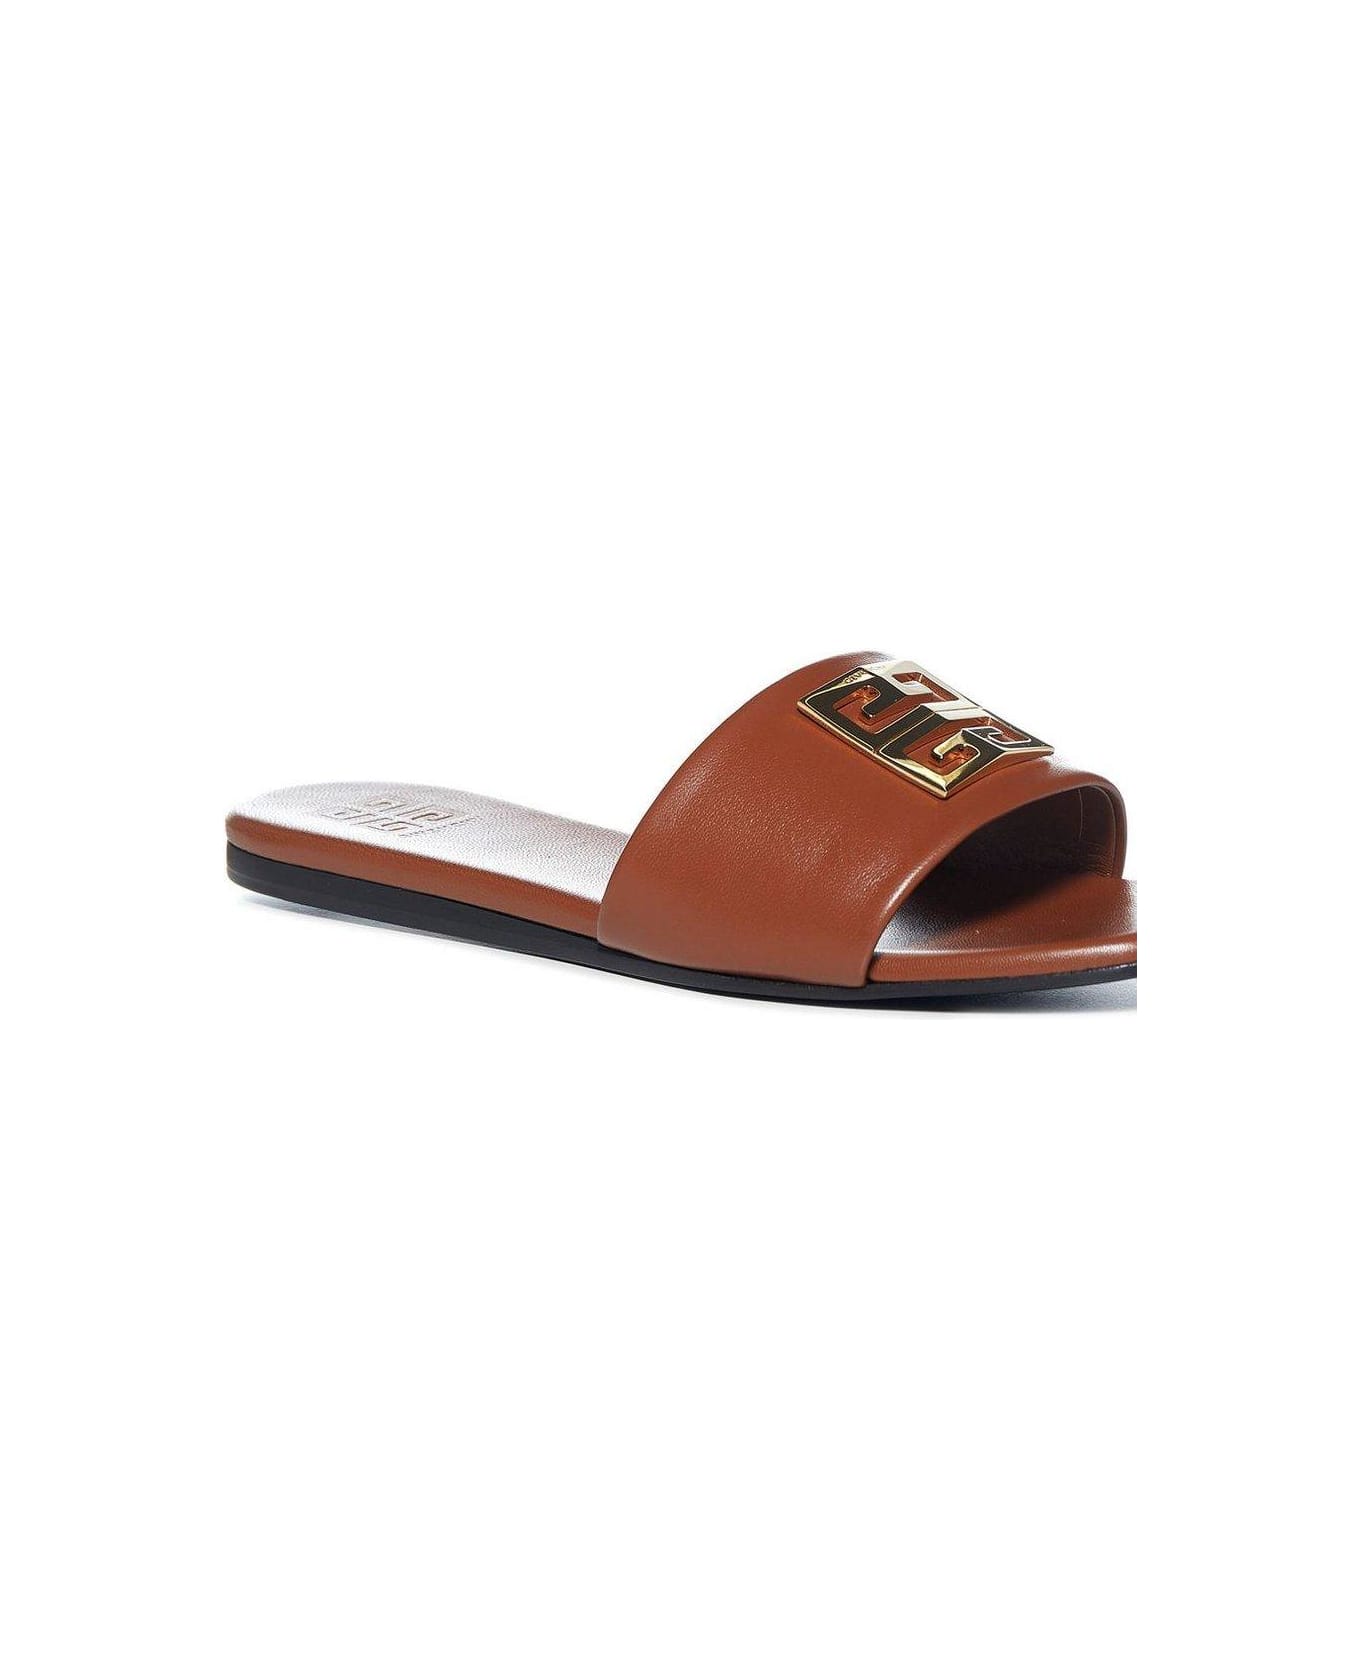 Givenchy 4g Motif Flat Sandals - BROWN サンダル